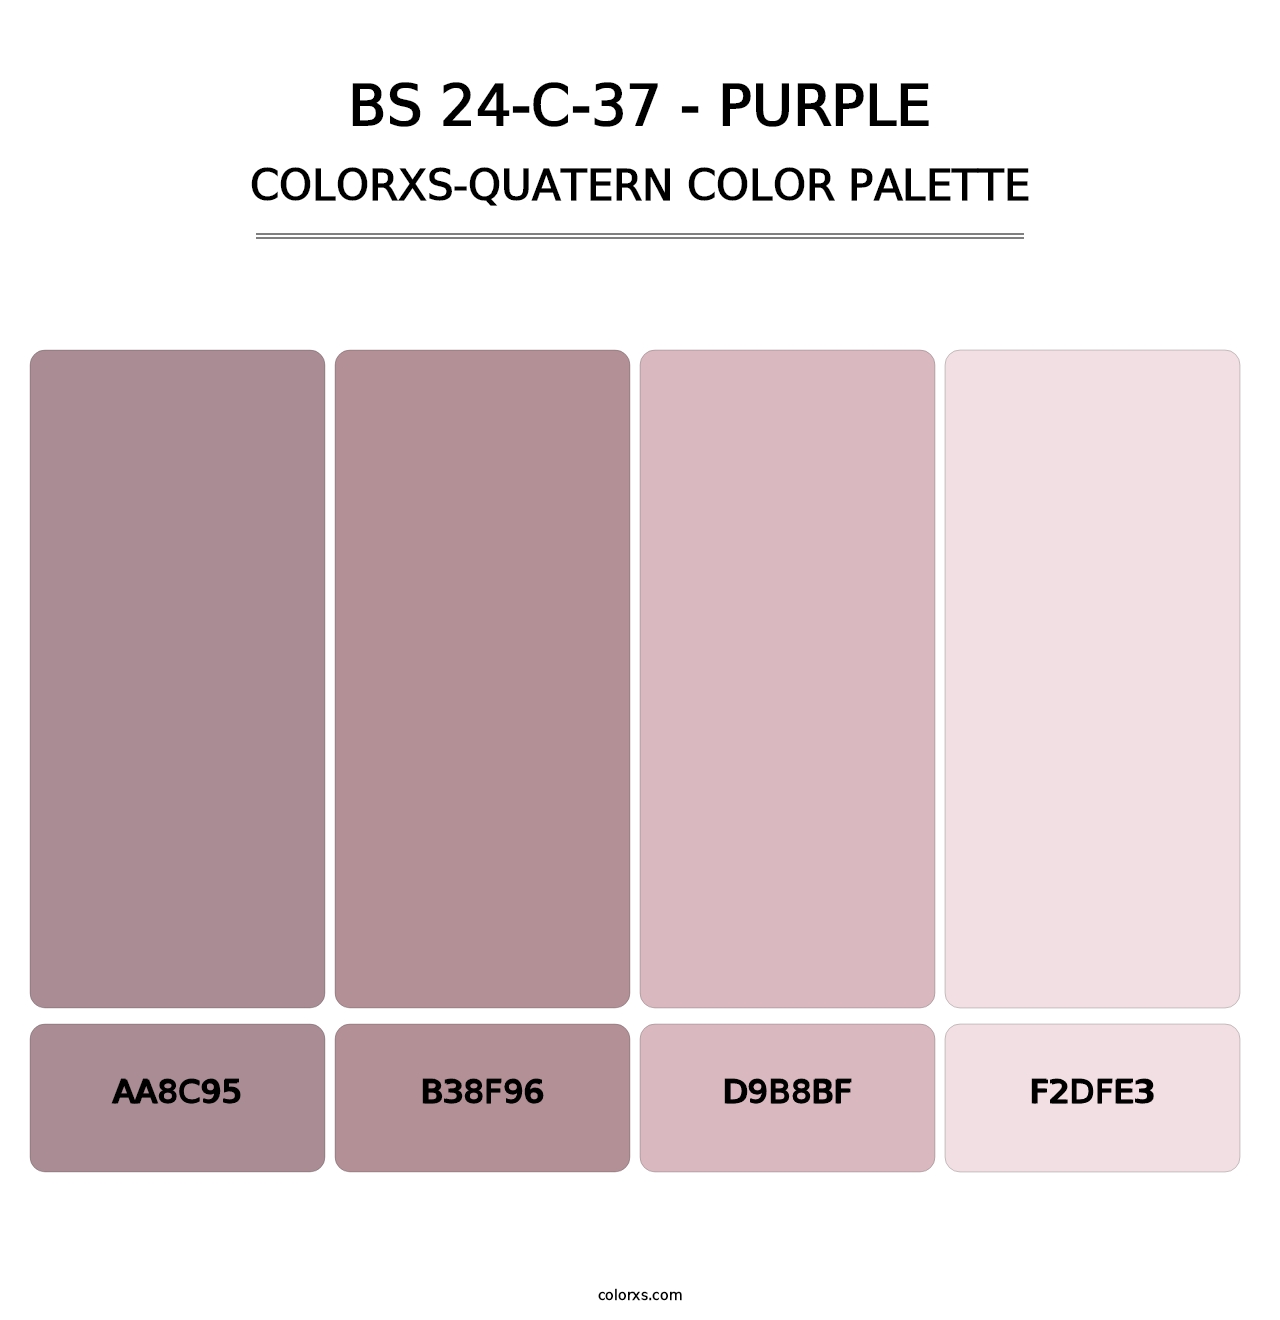 BS 24-C-37 - Purple - Colorxs Quatern Palette